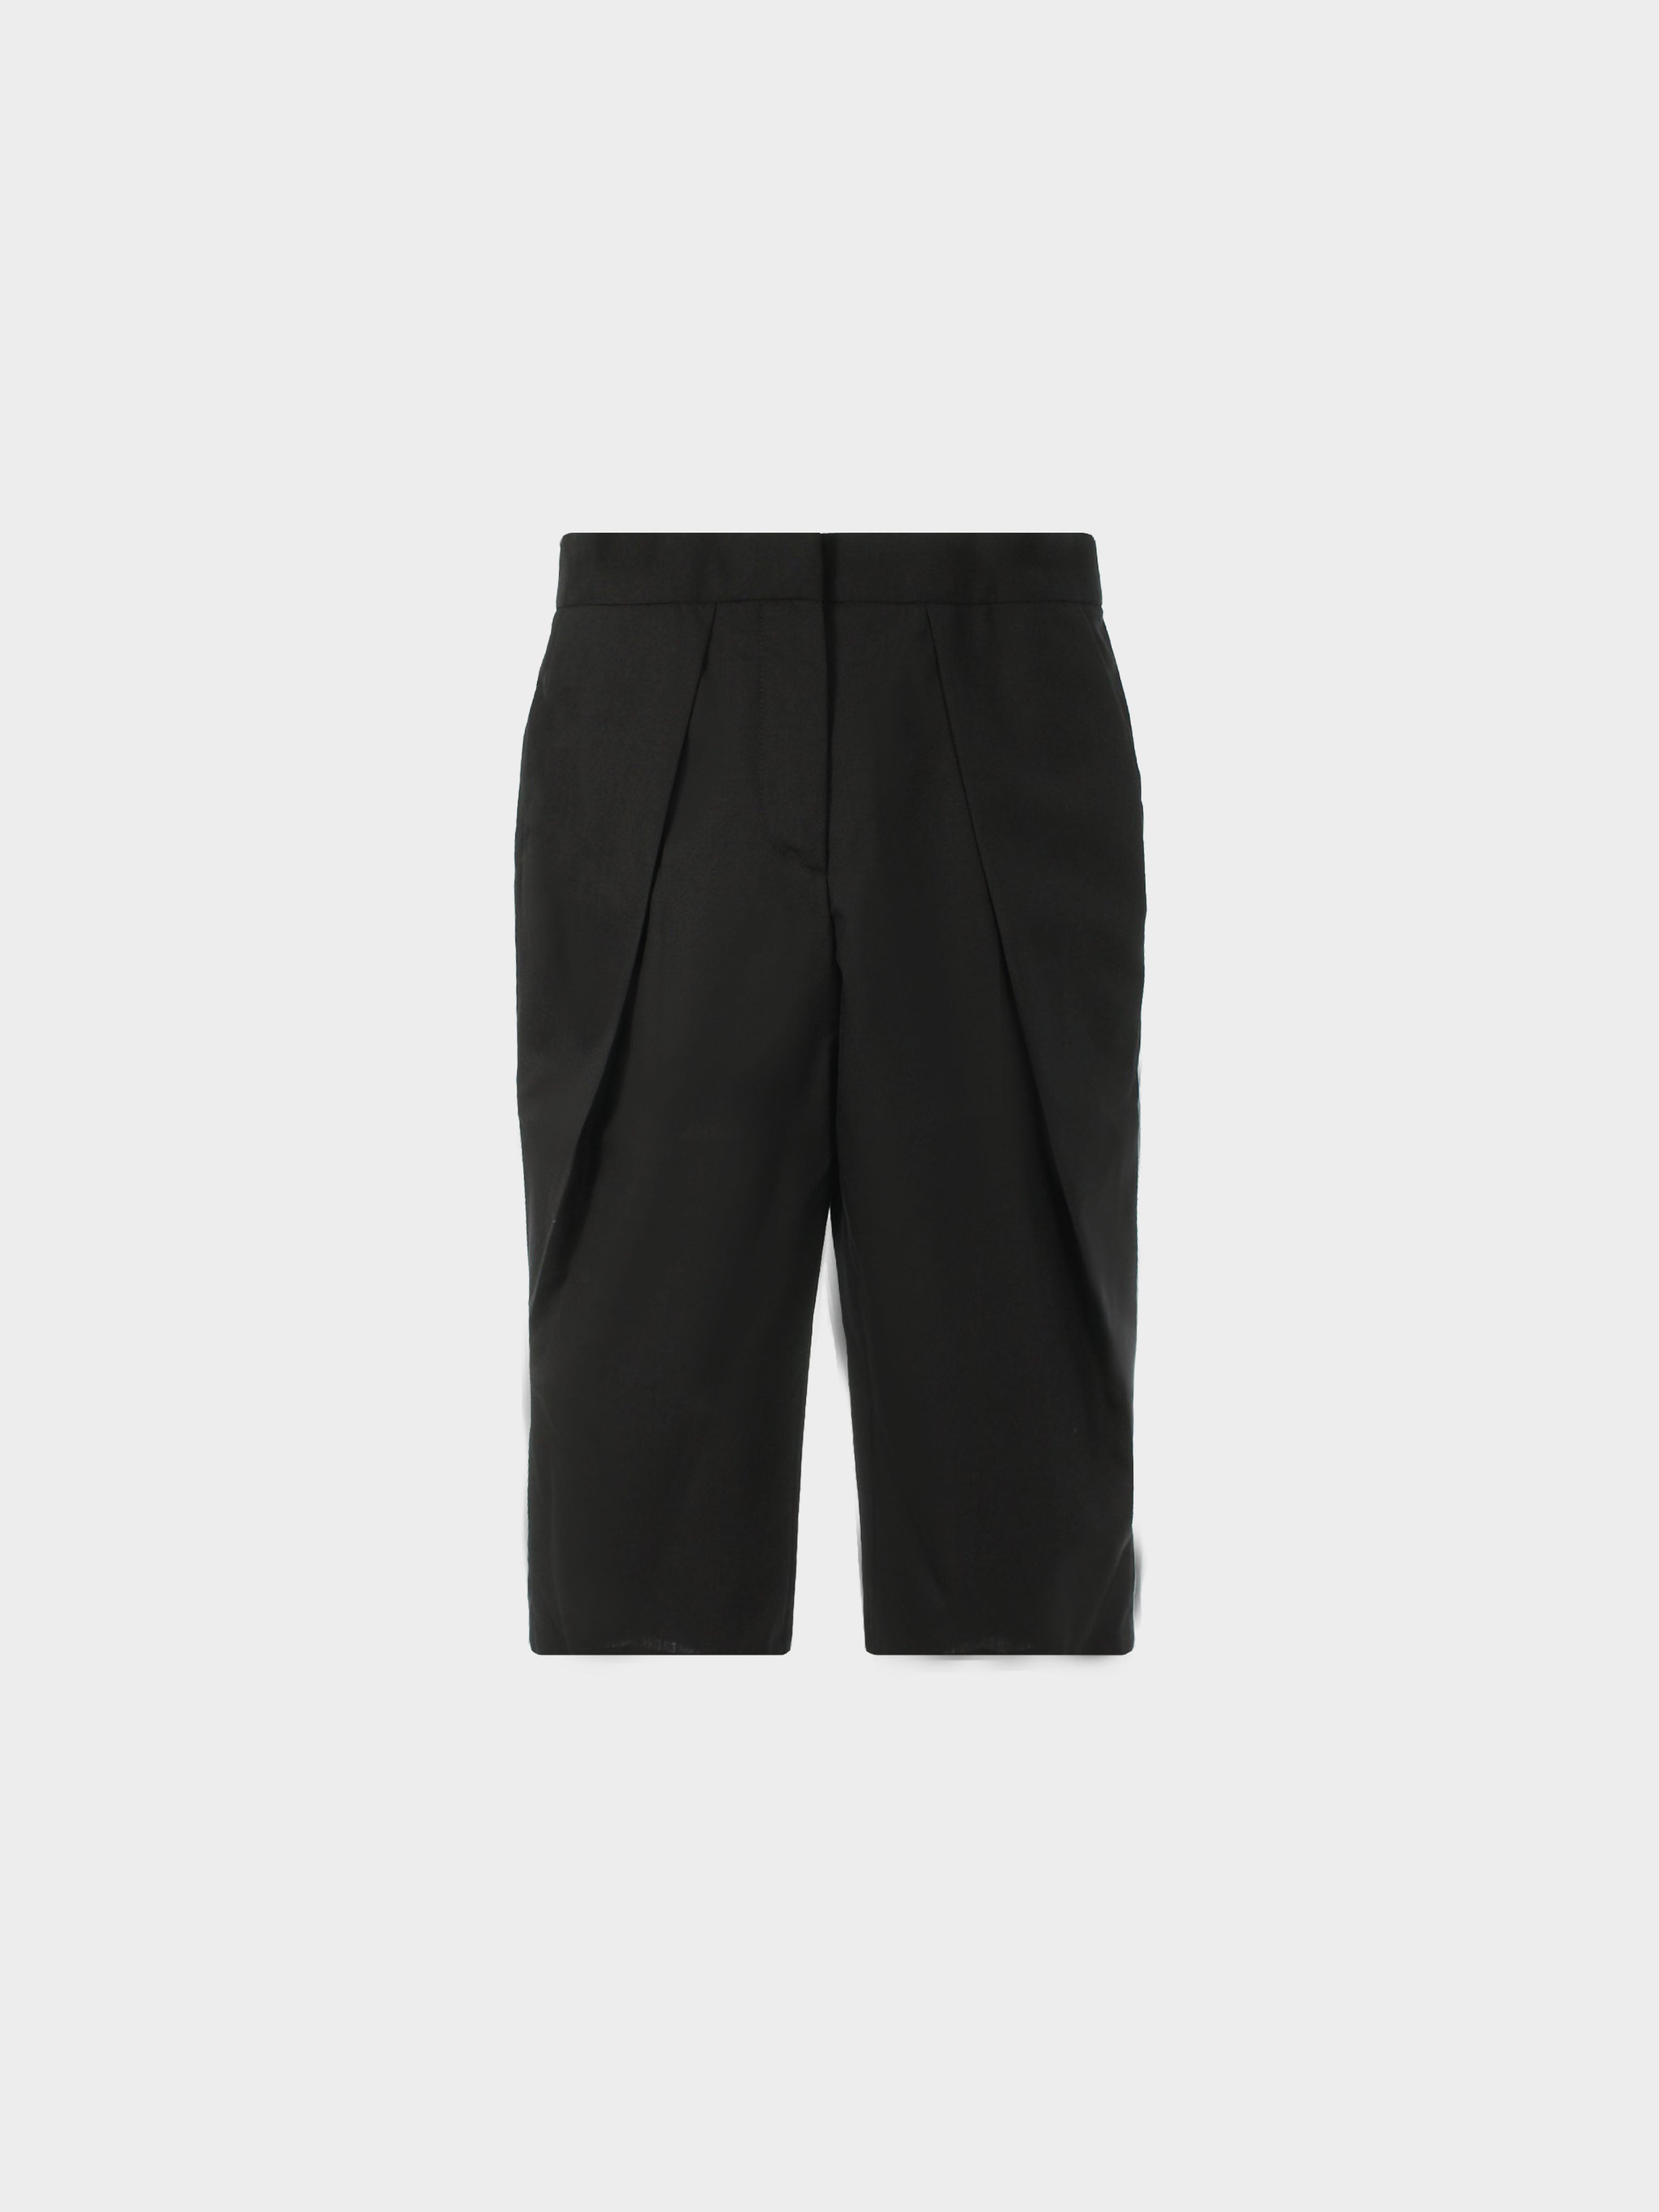 Jean Paul Gaultier 1990s Black Side Pleated Shorts